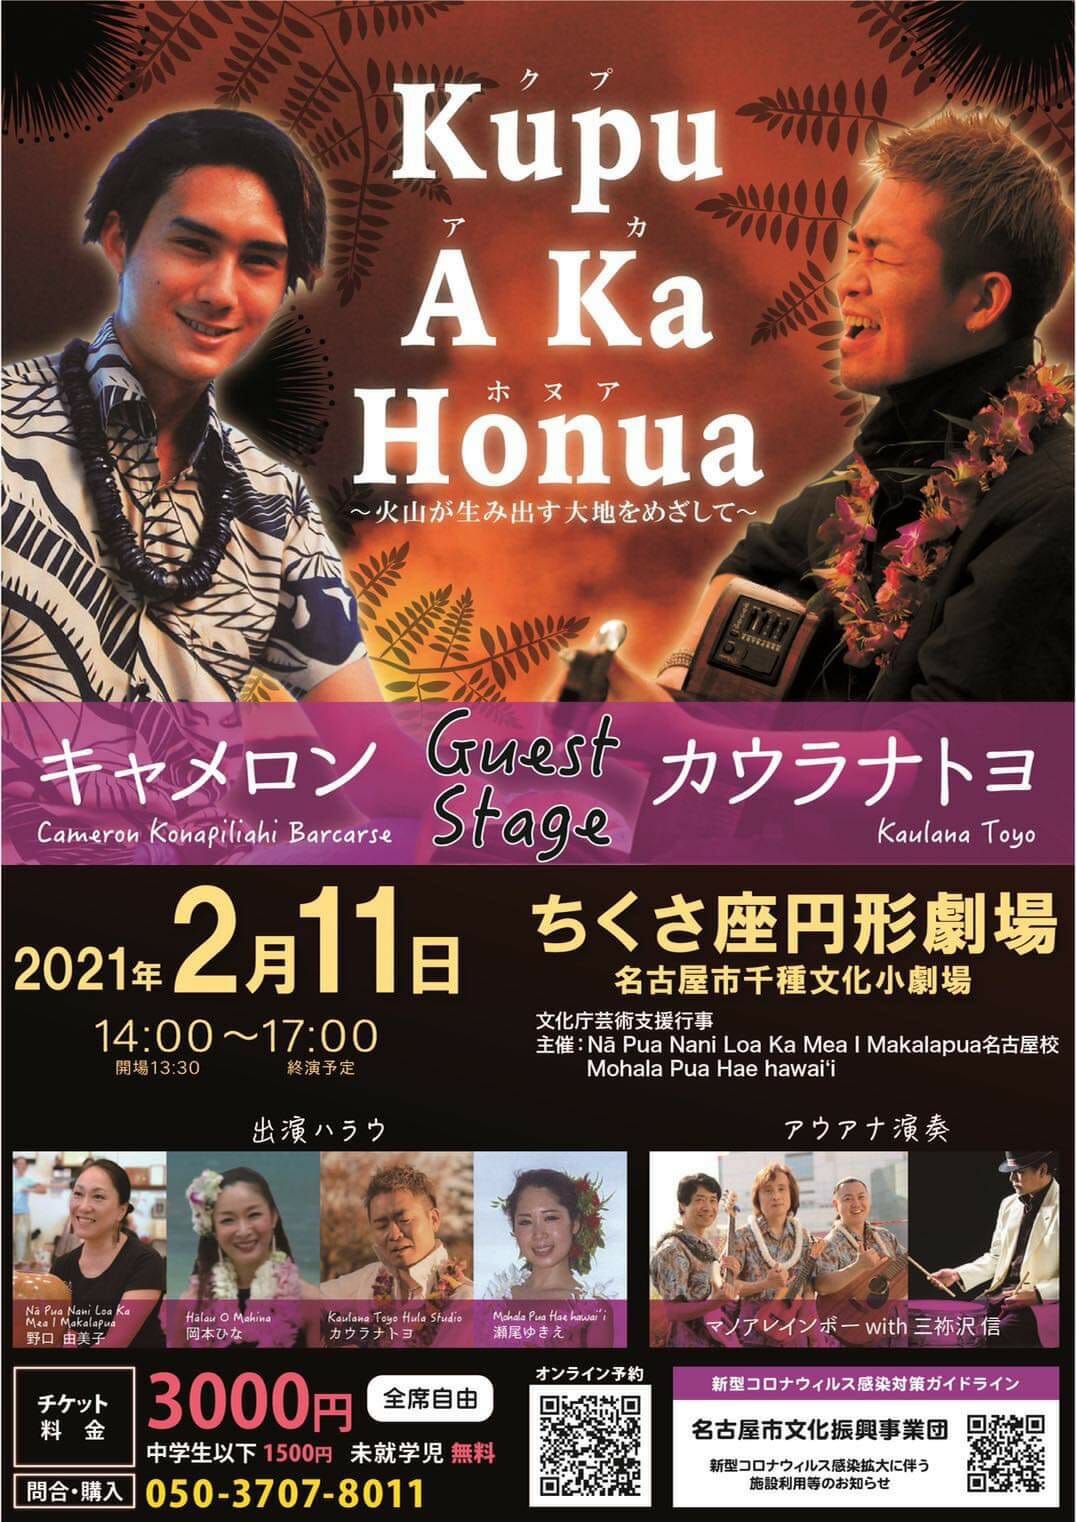 LIVE/EVENT情報 | Kupu A Ka Honua | カウラナトヨ